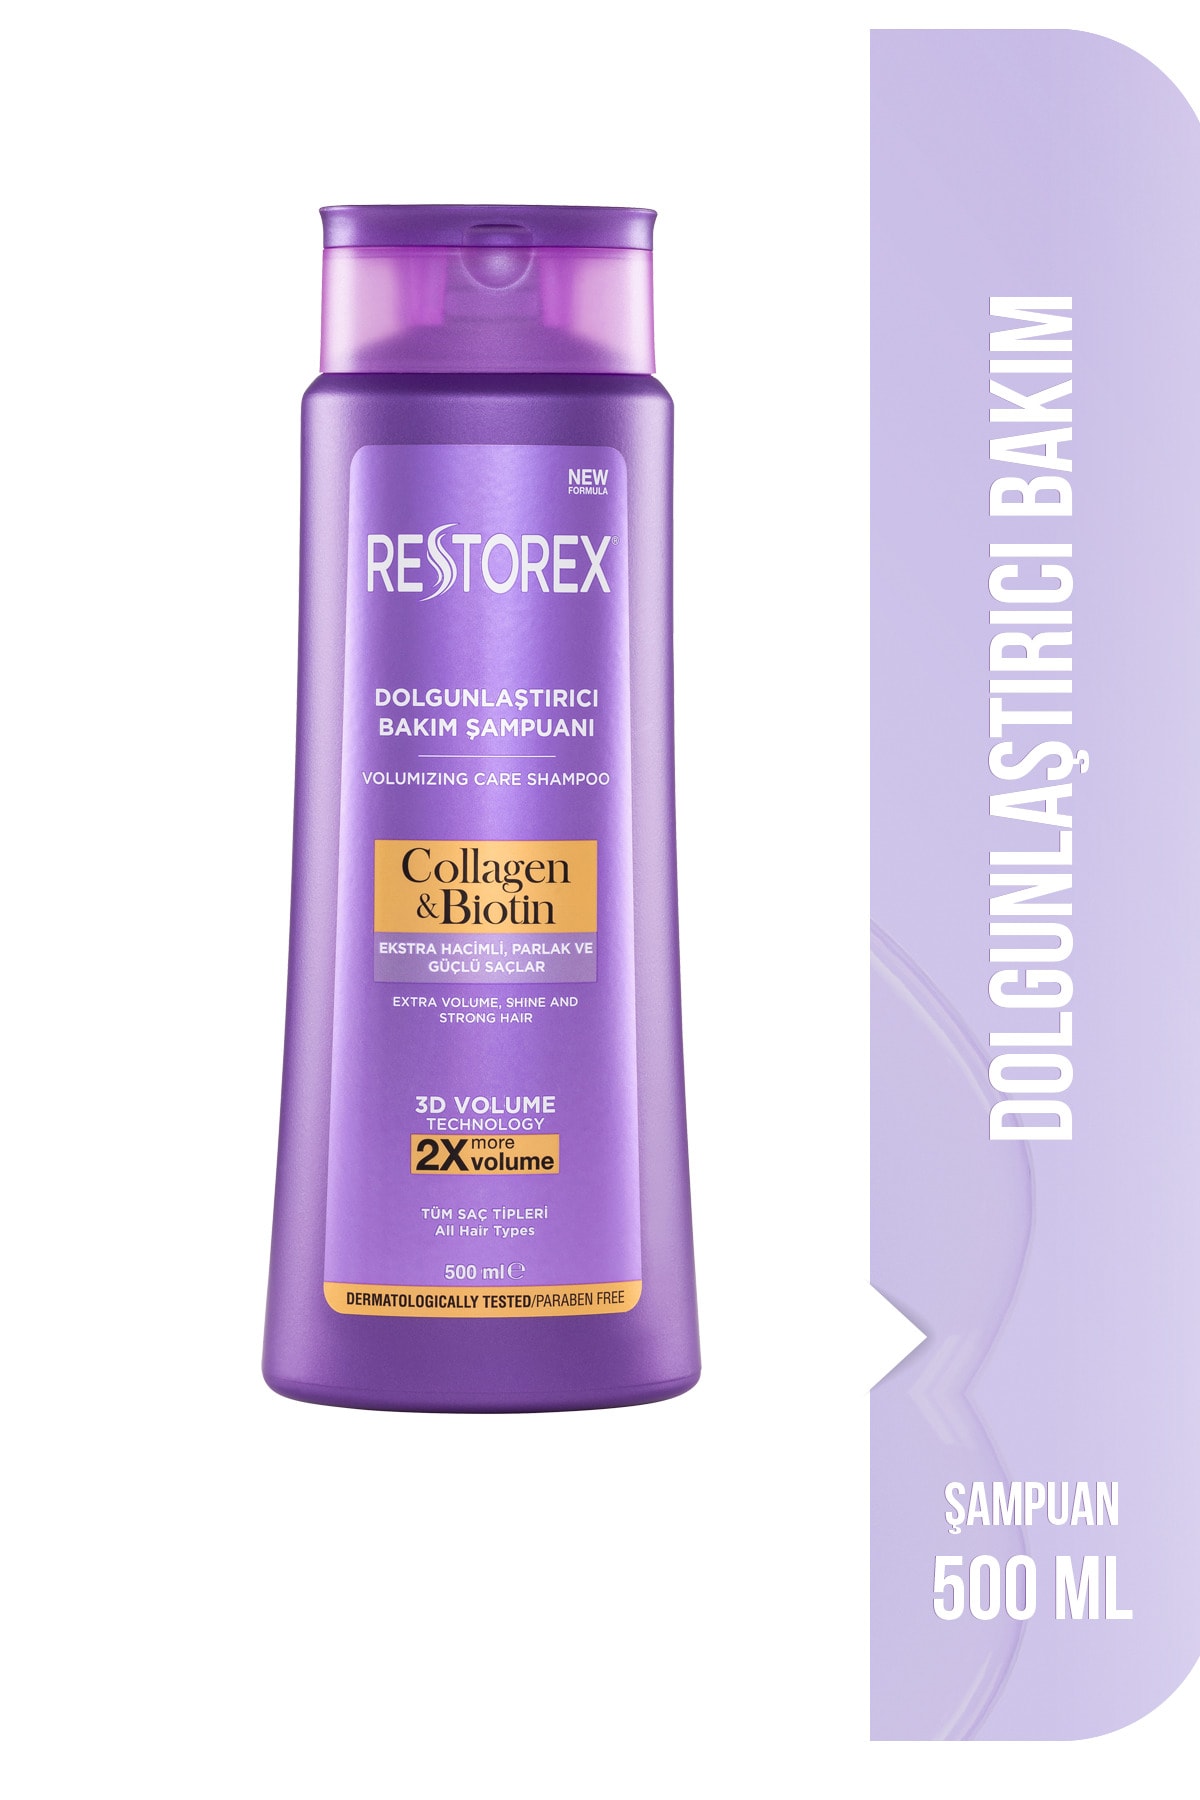 Restorex Collagen & Biotin Hacimsiz Saçlar Için Dolgunlaştırıcı Şampuan 500ml